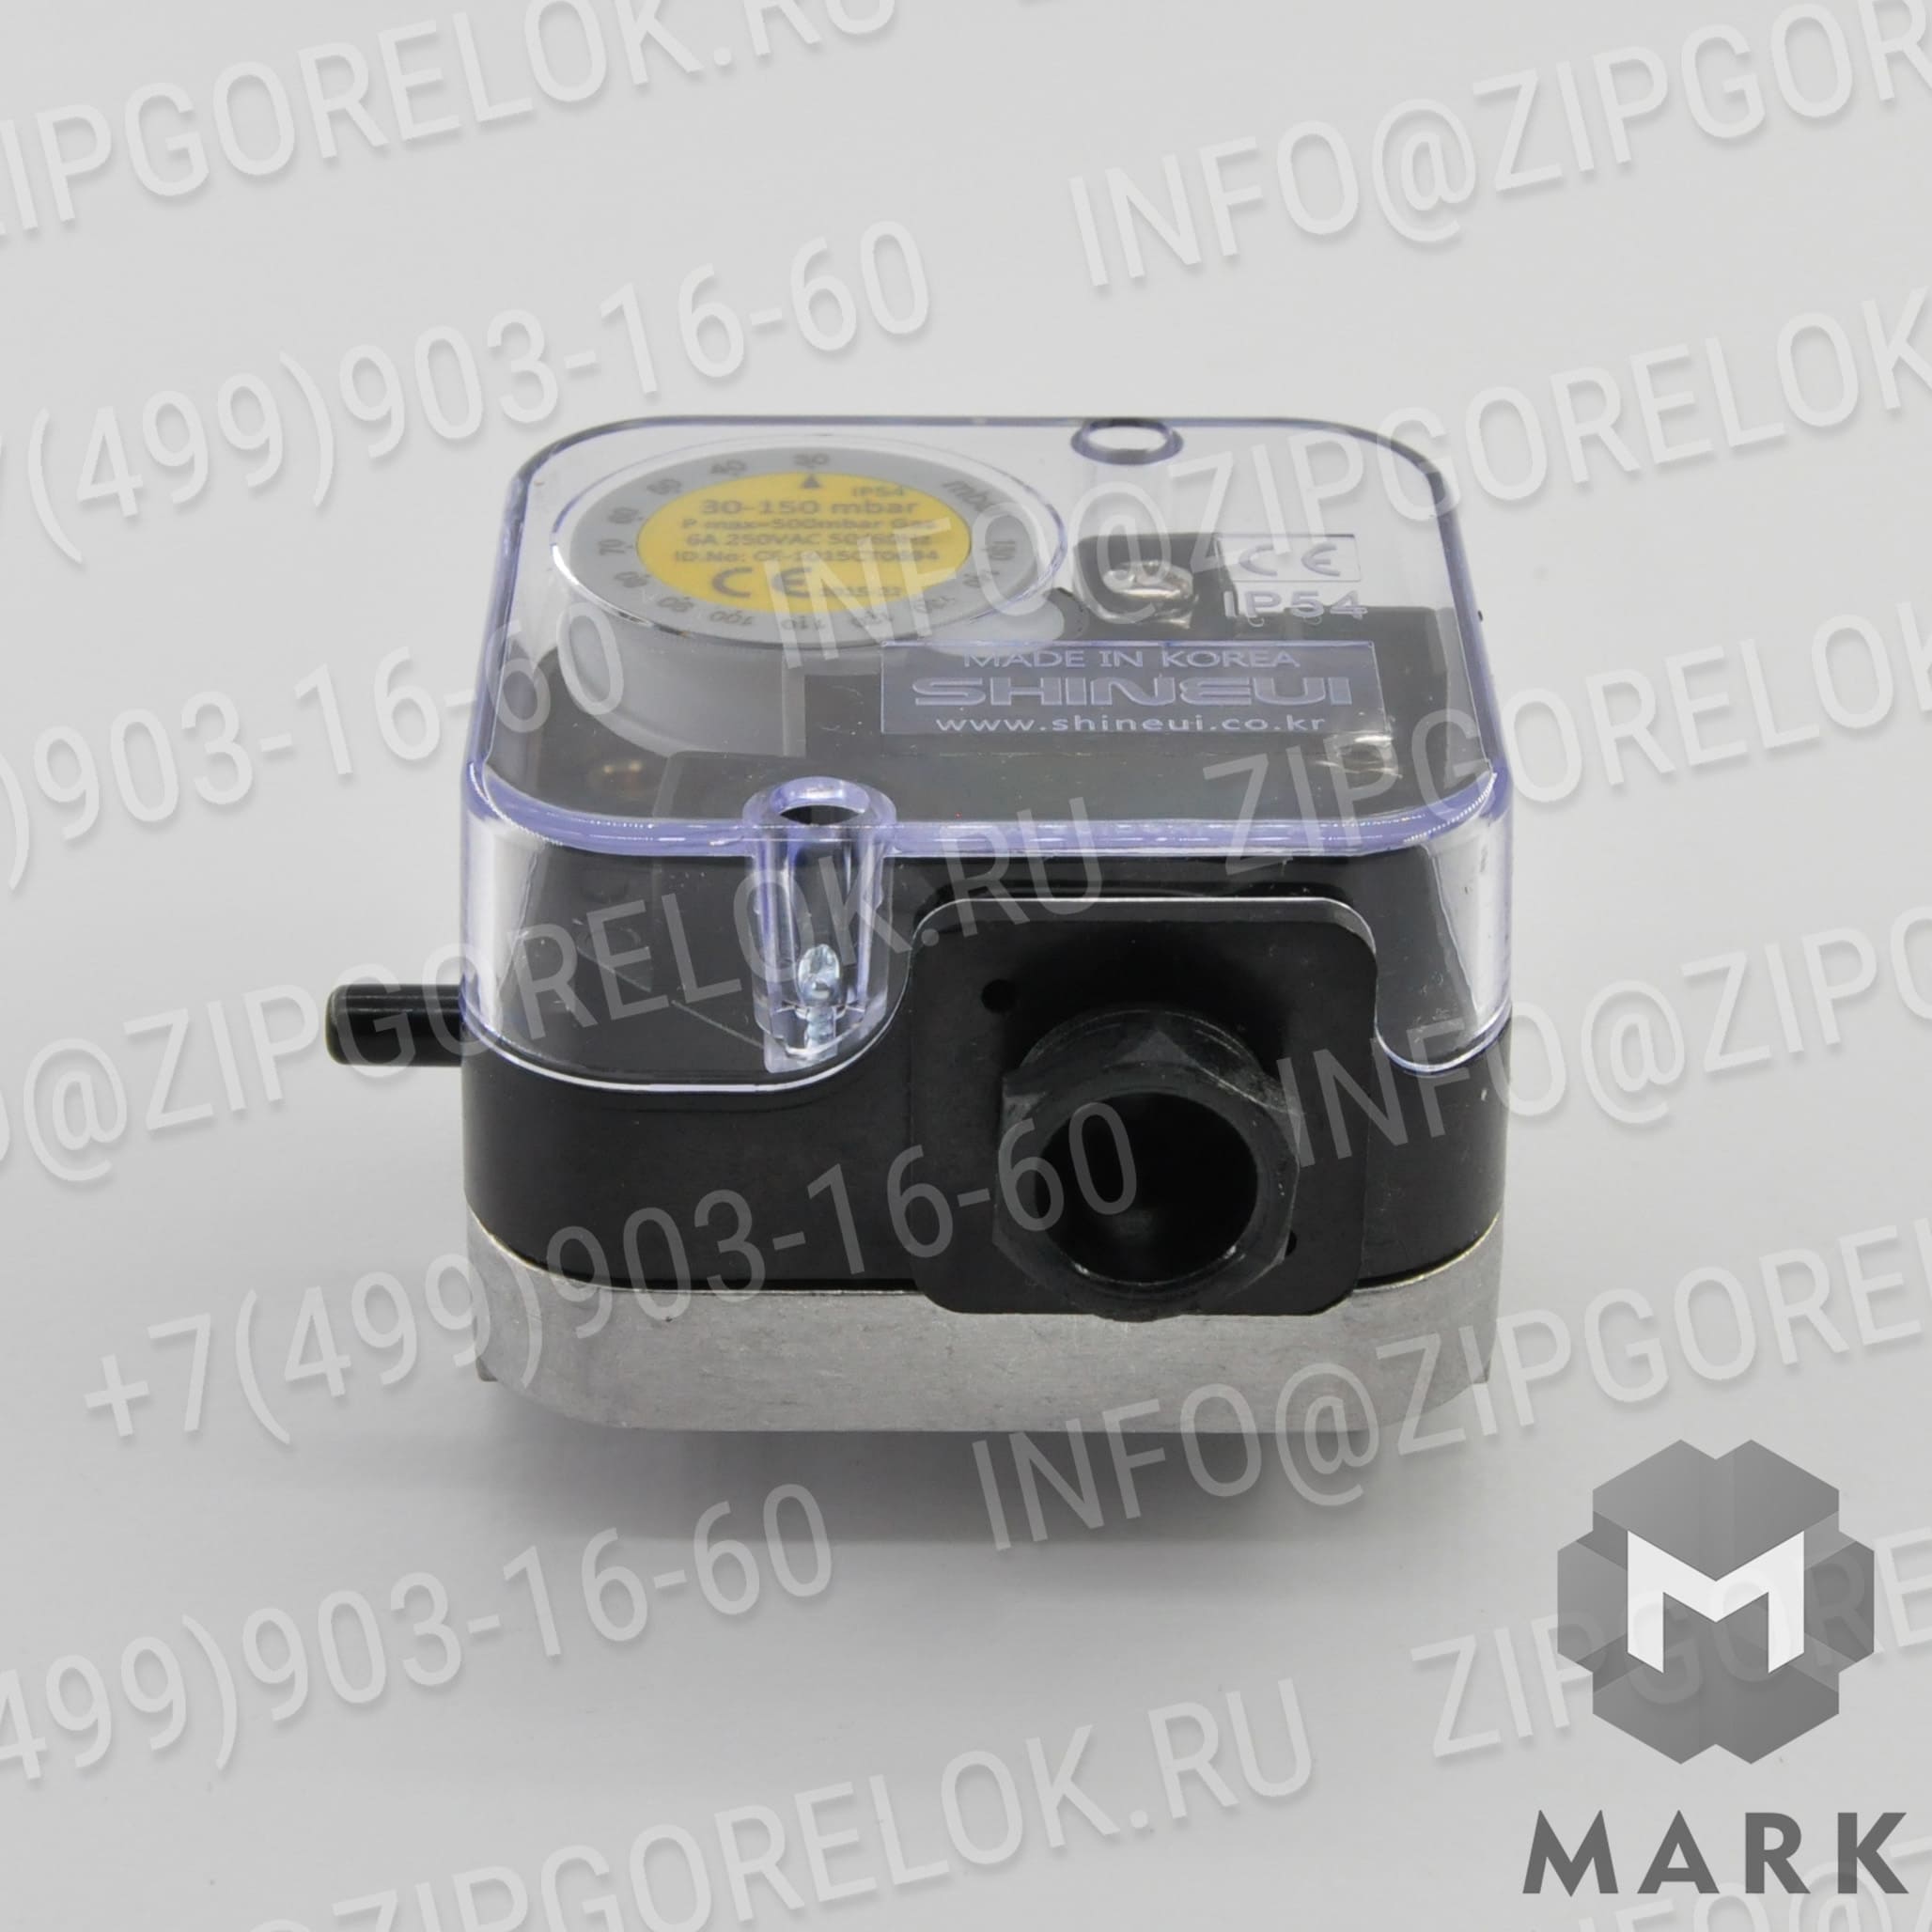 SGPS-150V Датчик-реле давления газа SHINEUI SGPS-50V-CP купить по цене производителя | zipgrelok.ru